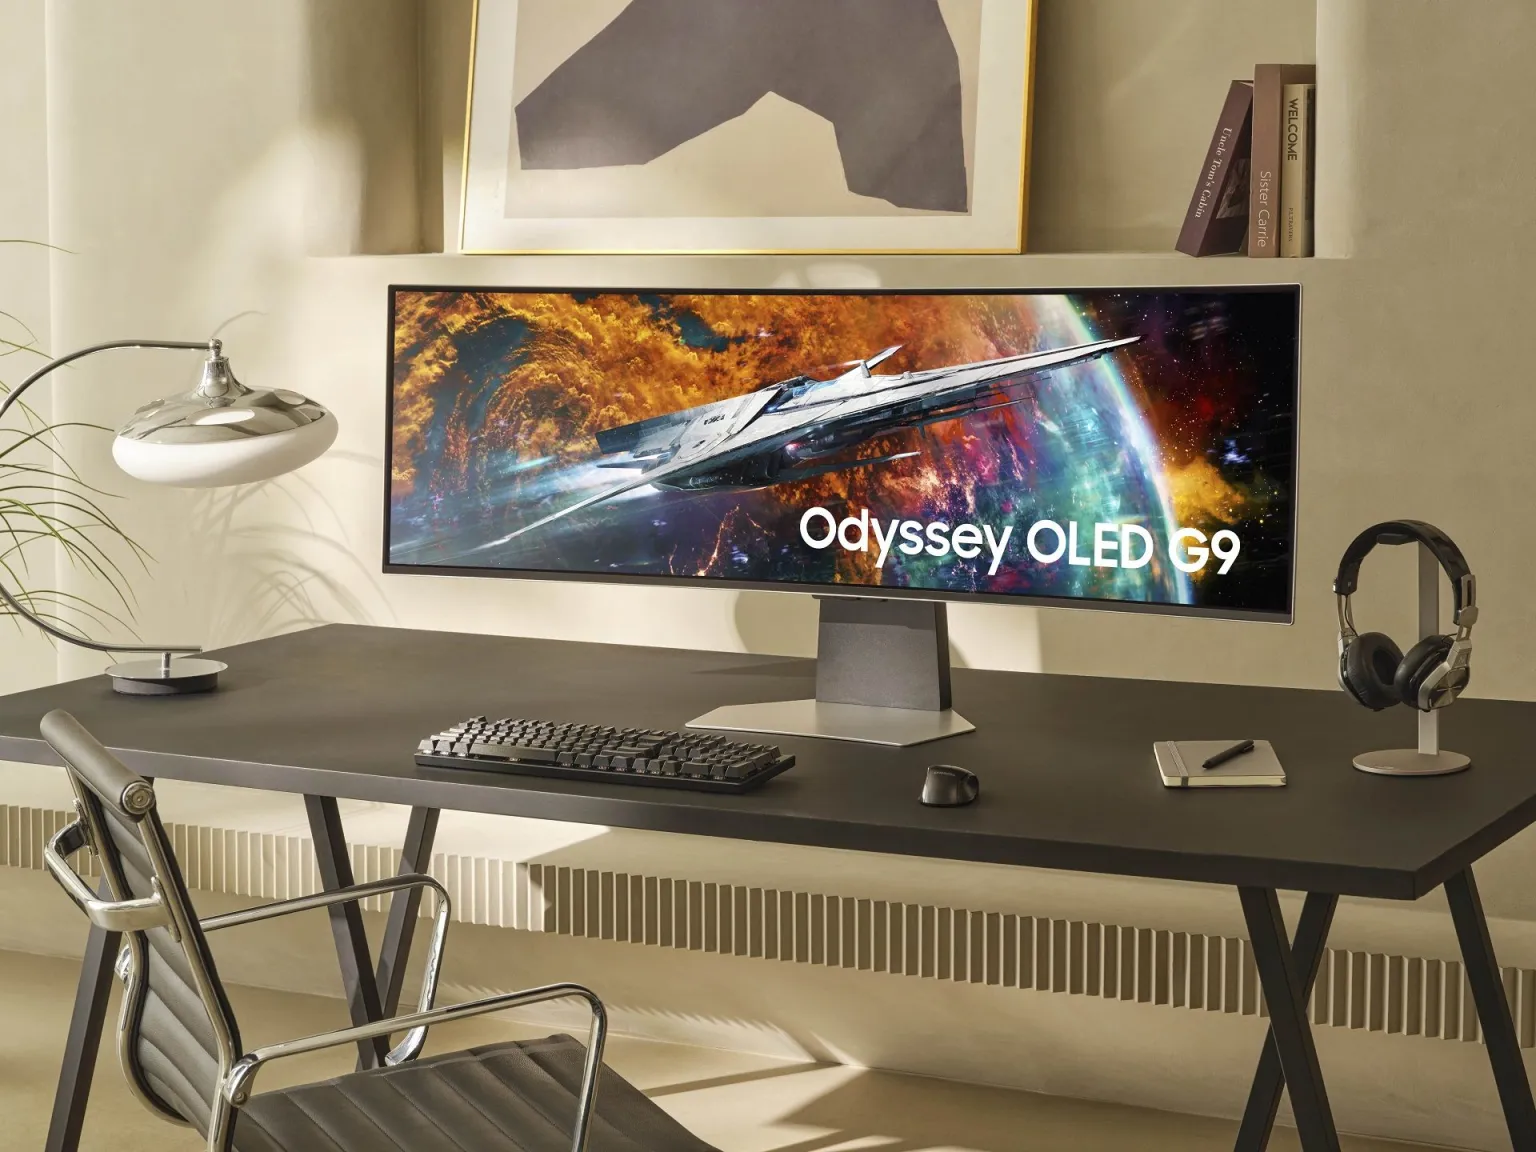 Khám phá Samsung Odyssey OLED G9 - kỷ nguyên mới của màn hình chơi game OLED